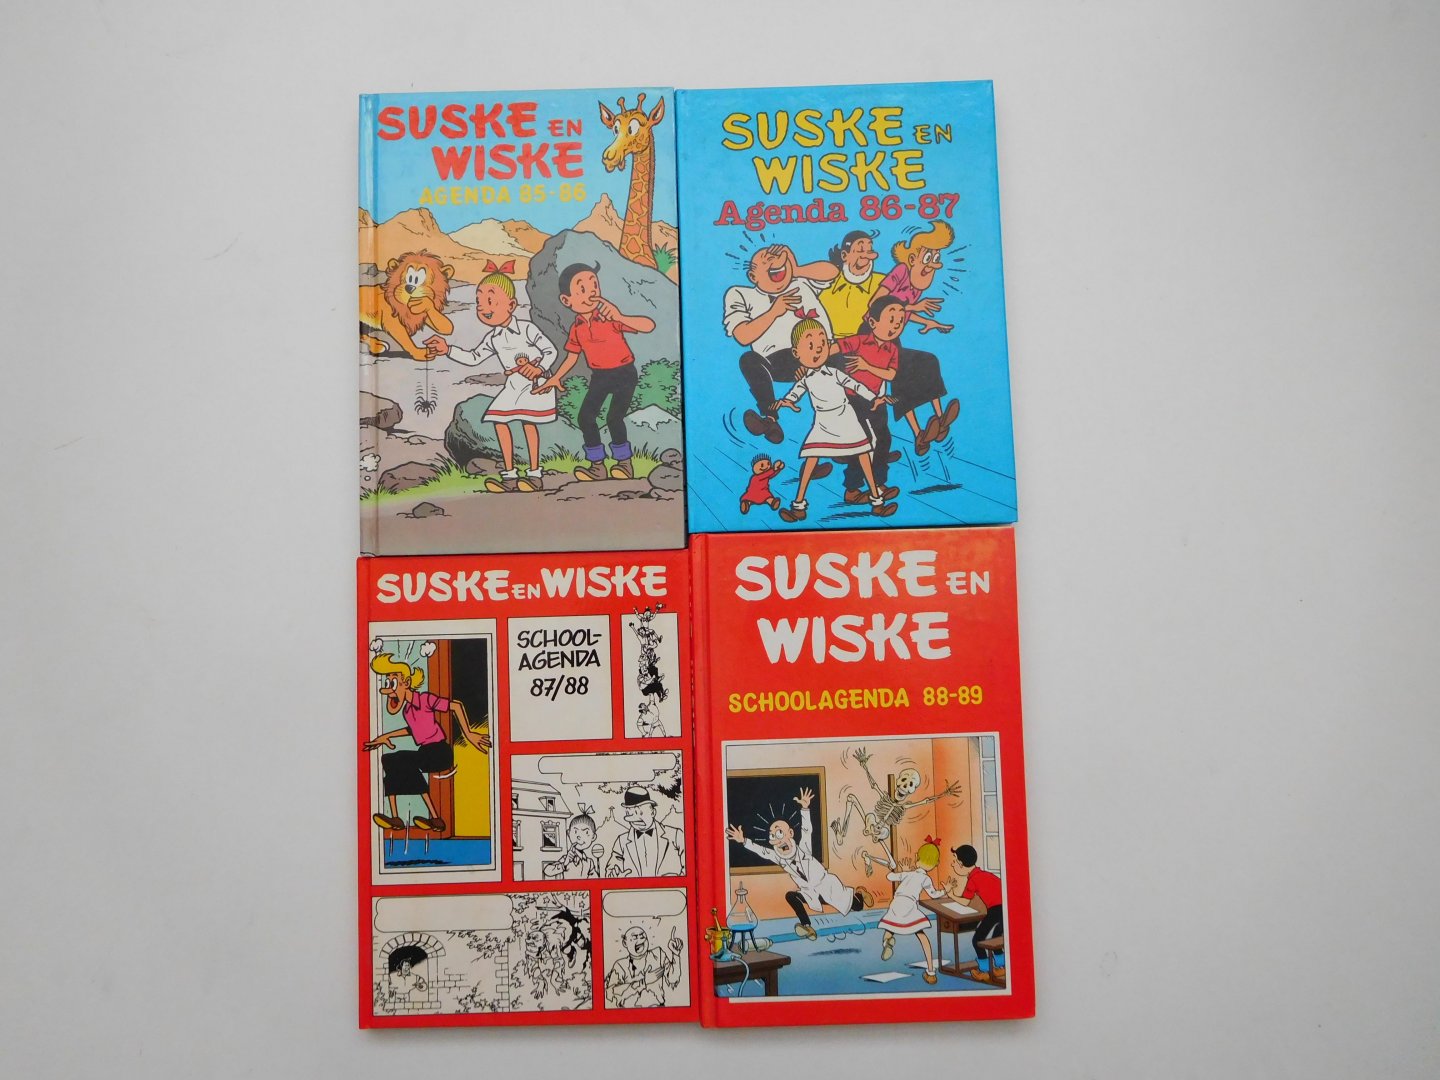  - Suske en Wiske Schoolagenda 88-89